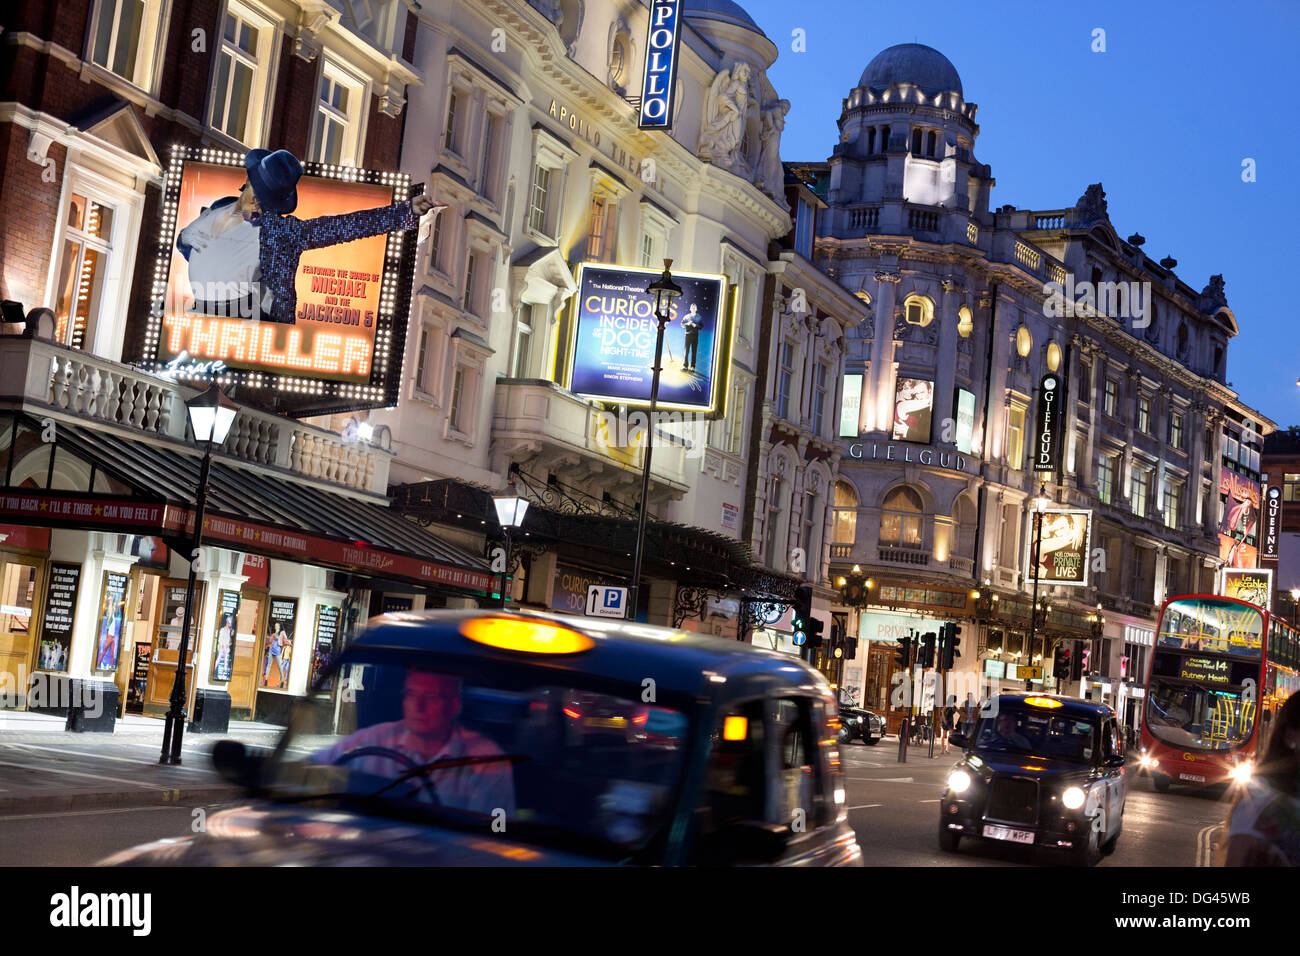 Cinémas de nuit, Shaftesbury Avenue, Londres, Angleterre, Royaume-Uni, Europe Banque D'Images